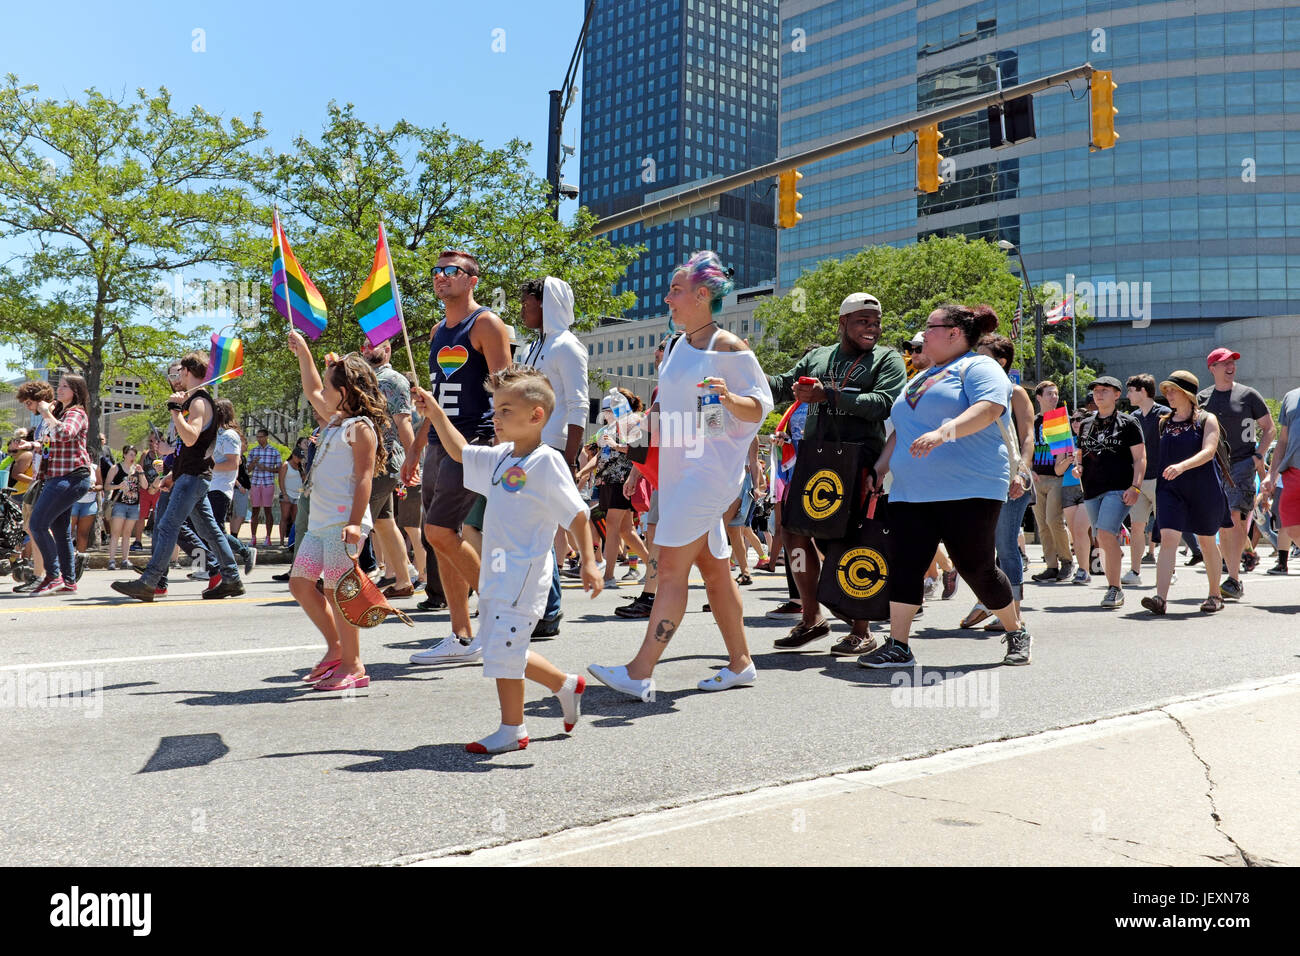 Les enfants marchant sur East 9th Street, tout en agitant des drapeaux arc-en-ciel au cours de la Le 24 juin 2017 Défilé de la fierté LGBT dans le centre-ville de Cleveland, Ohio, USA. Banque D'Images